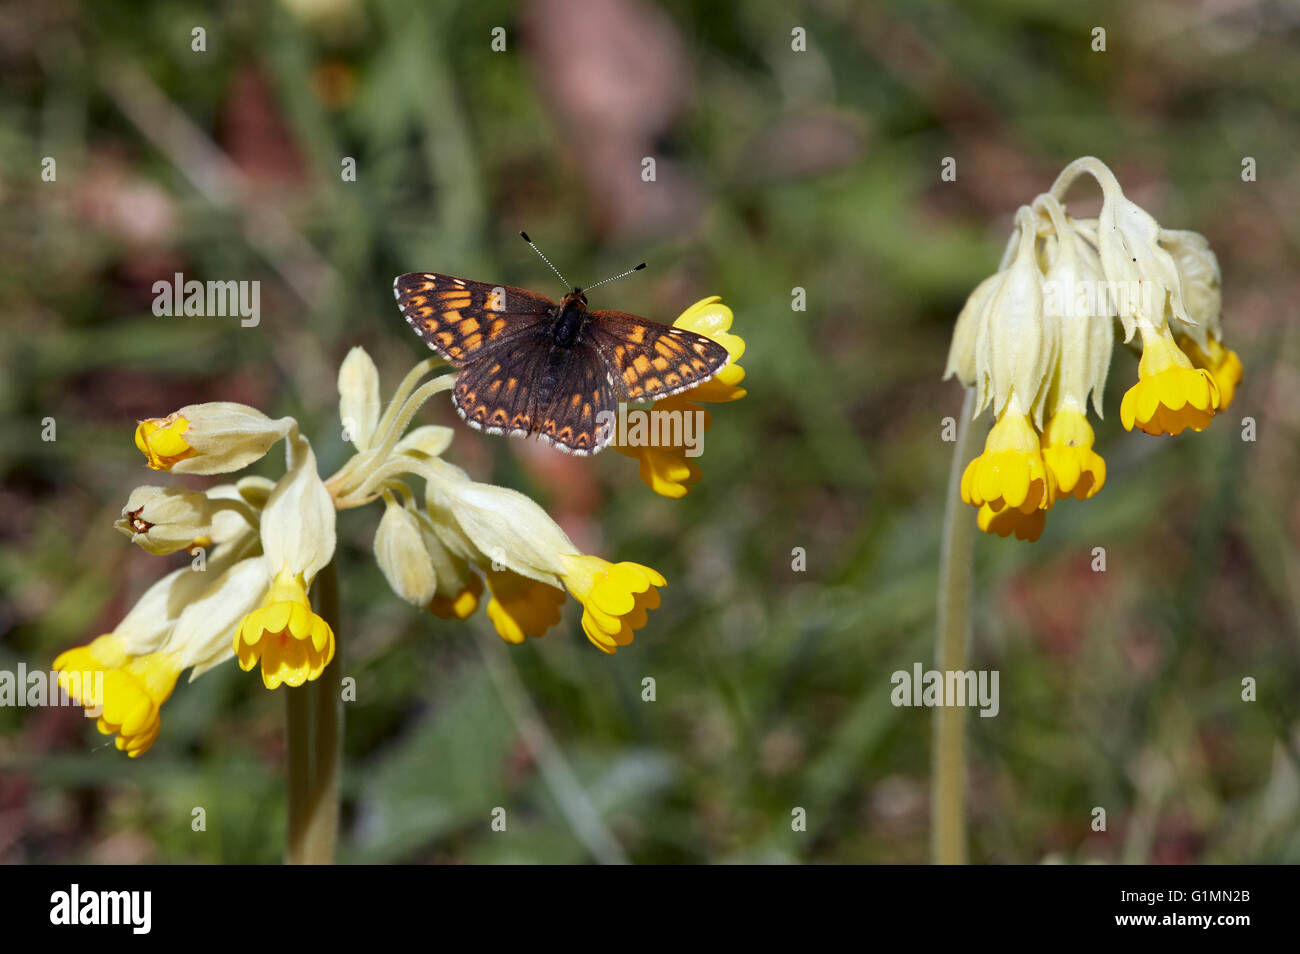 Herzog von Burgund Schmetterling auf Schlüsselblume Blumen.  Noar Hill Naturschutzgebiet, Selborne, Hampshire, Surrey, England. Stockfoto